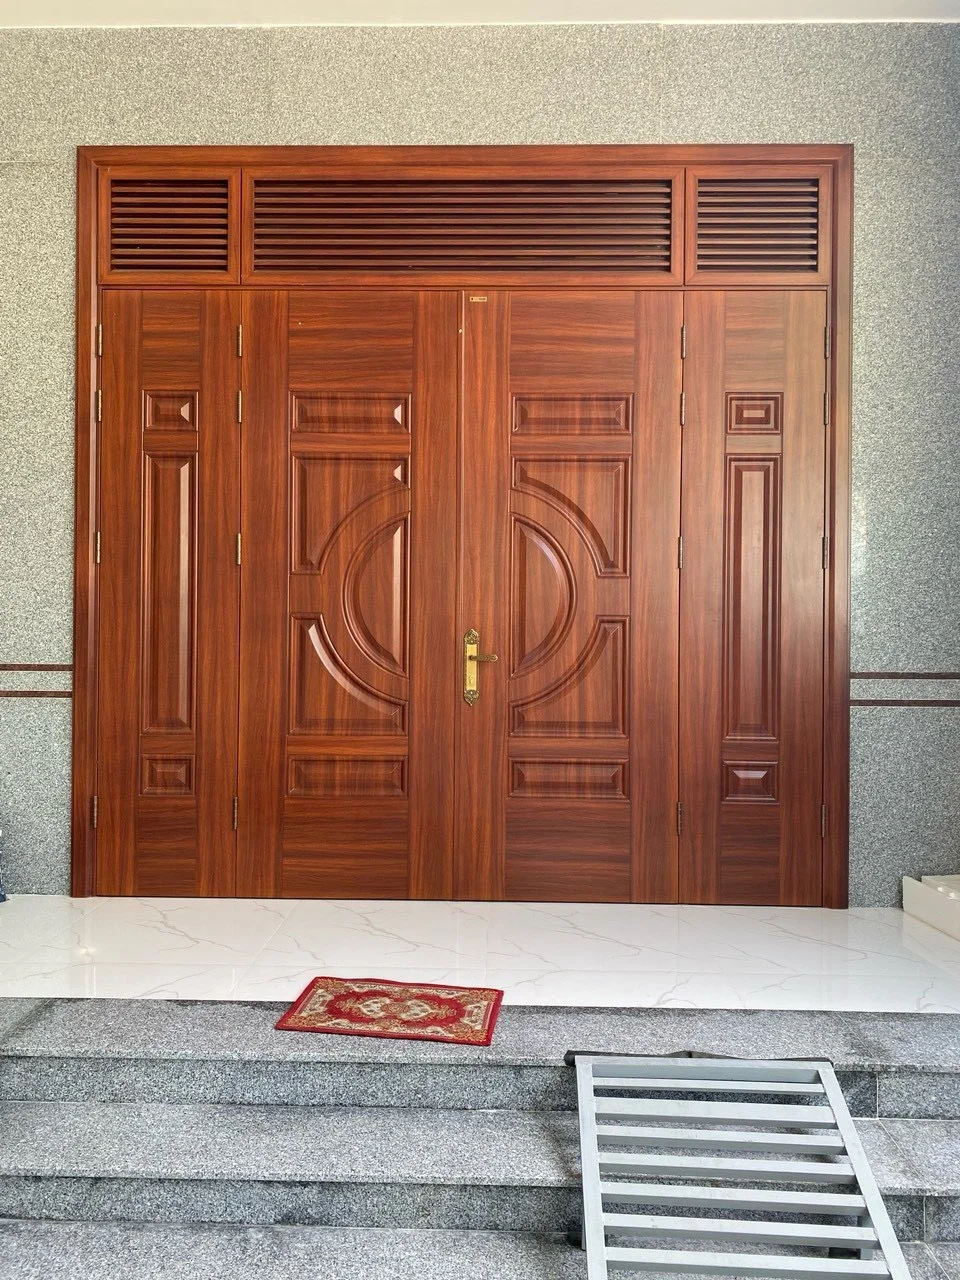 Nội, ngoại thất: Cửa thép vân gỗ tại Bình Định - Mẫu cửa thép đẹp Z5364424190859_fb49aa6becc48d7749e9467afbb03ba5